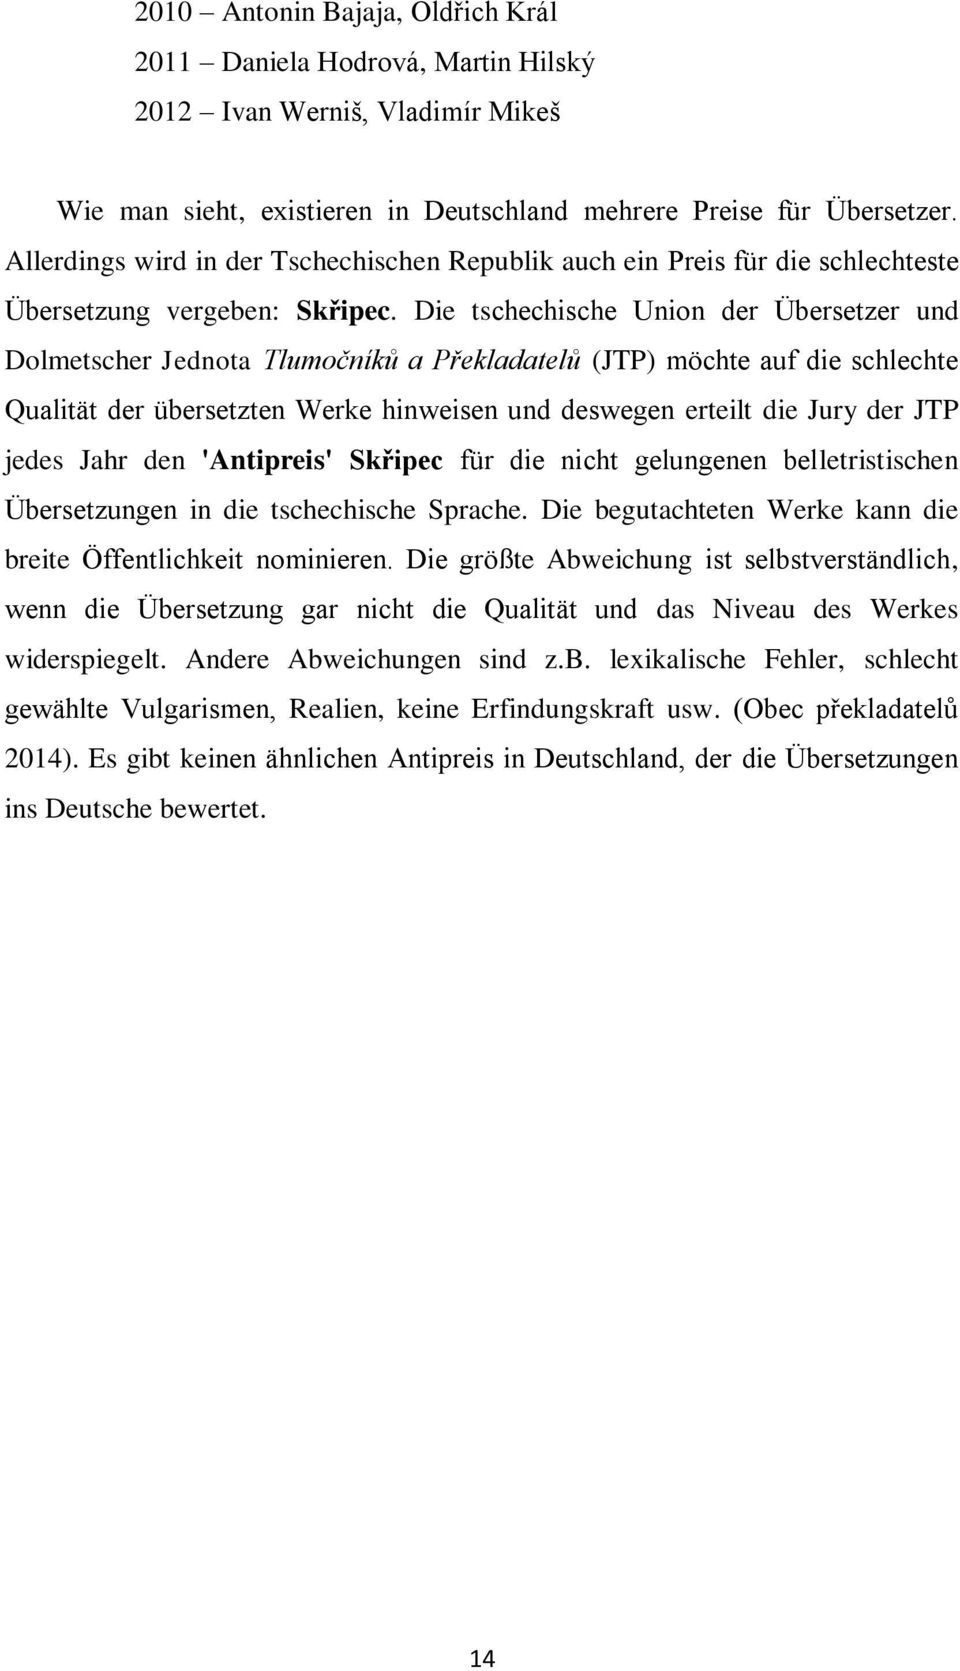 Die tschechische Union der Übersetzer und Dolmetscher Jednota Tlumočníků a Překladatelů (JTP) möchte auf die schlechte Qualität der übersetzten Werke hinweisen und deswegen erteilt die Jury der JTP